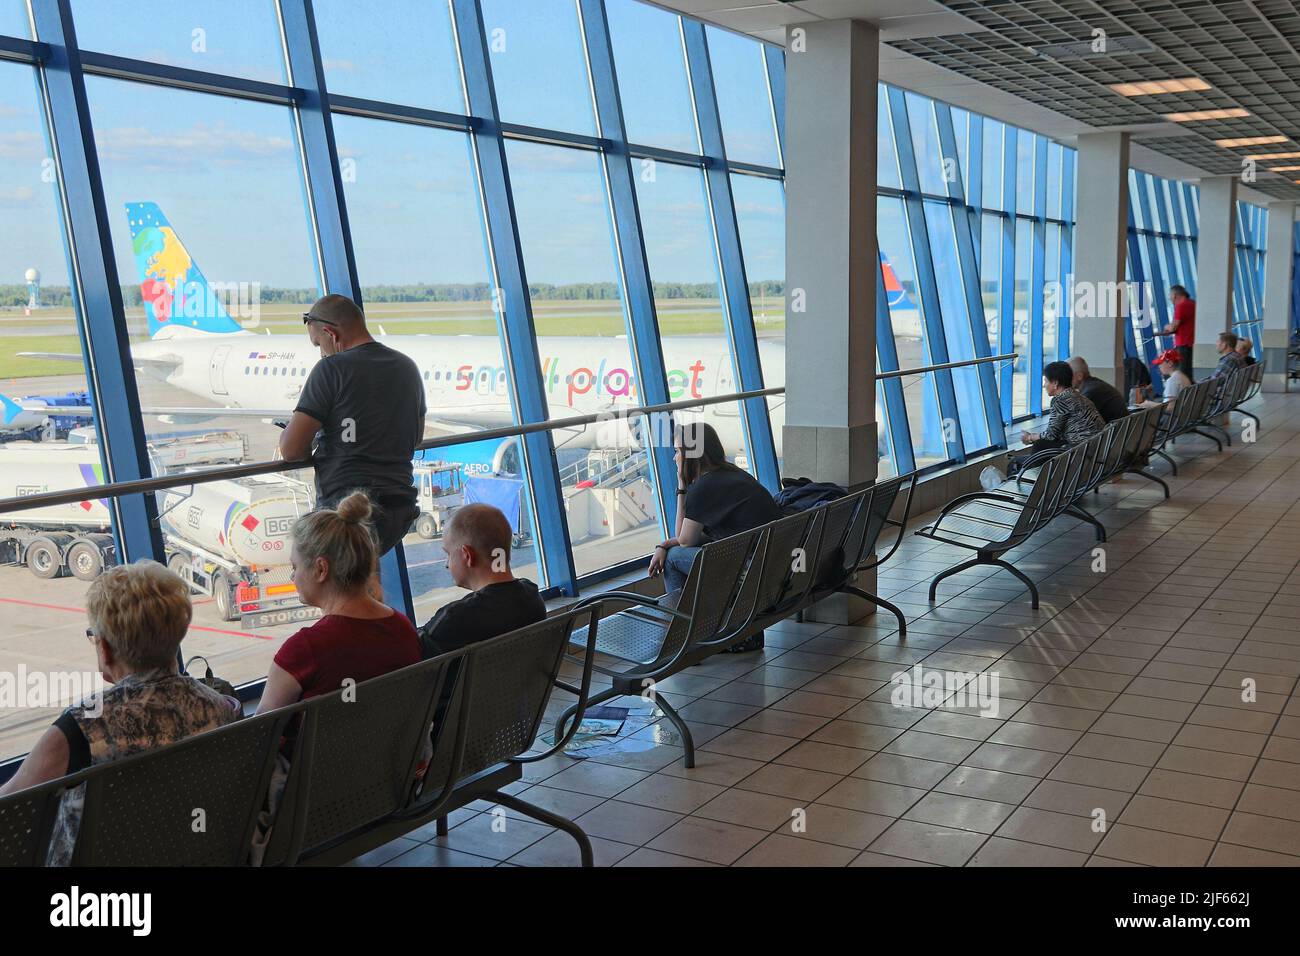 KATOWICE, POLONIA - 20 MAGGIO 2018: I passeggeri aspettano all'aeroporto di Katowice in Polonia. Katowice è il 4th aeroporto più trafficato della Polonia (4,8 m di passeggeri all'anno Foto Stock